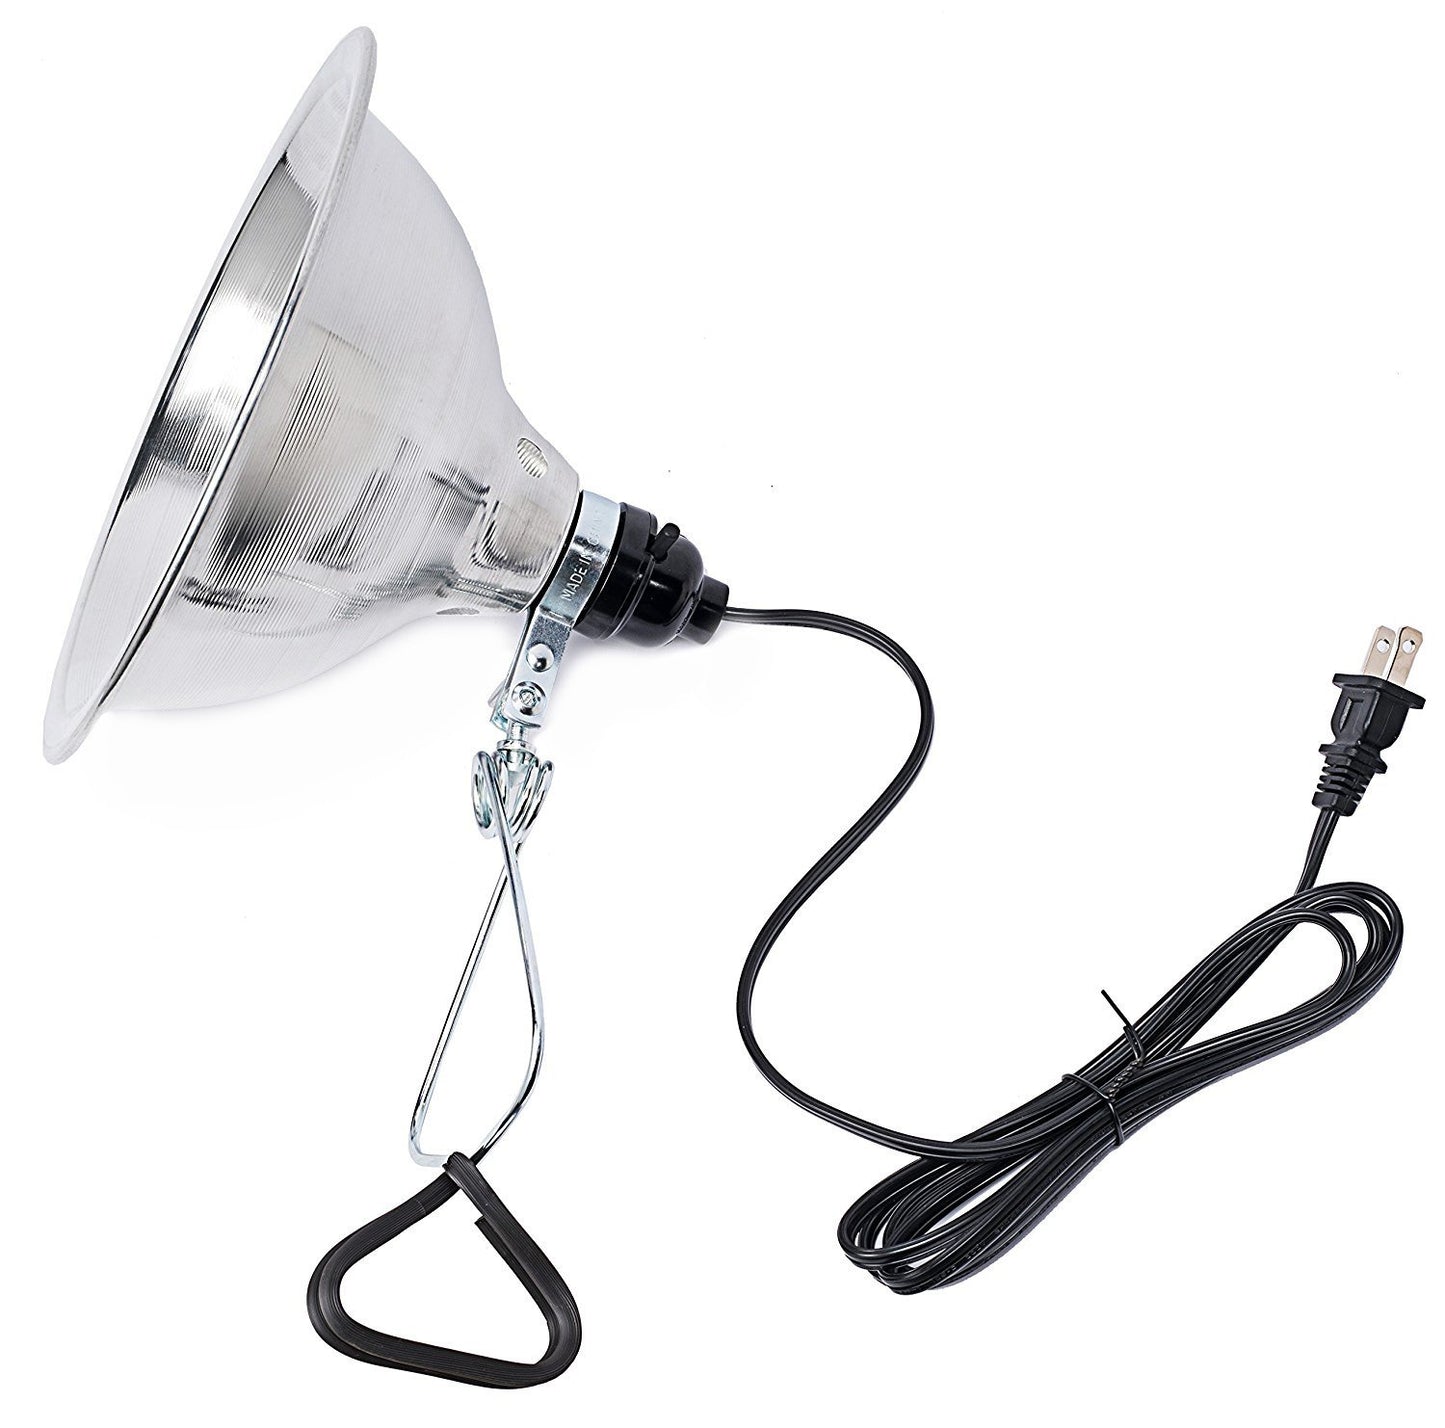 Adjustable Brooder Heat Lamp